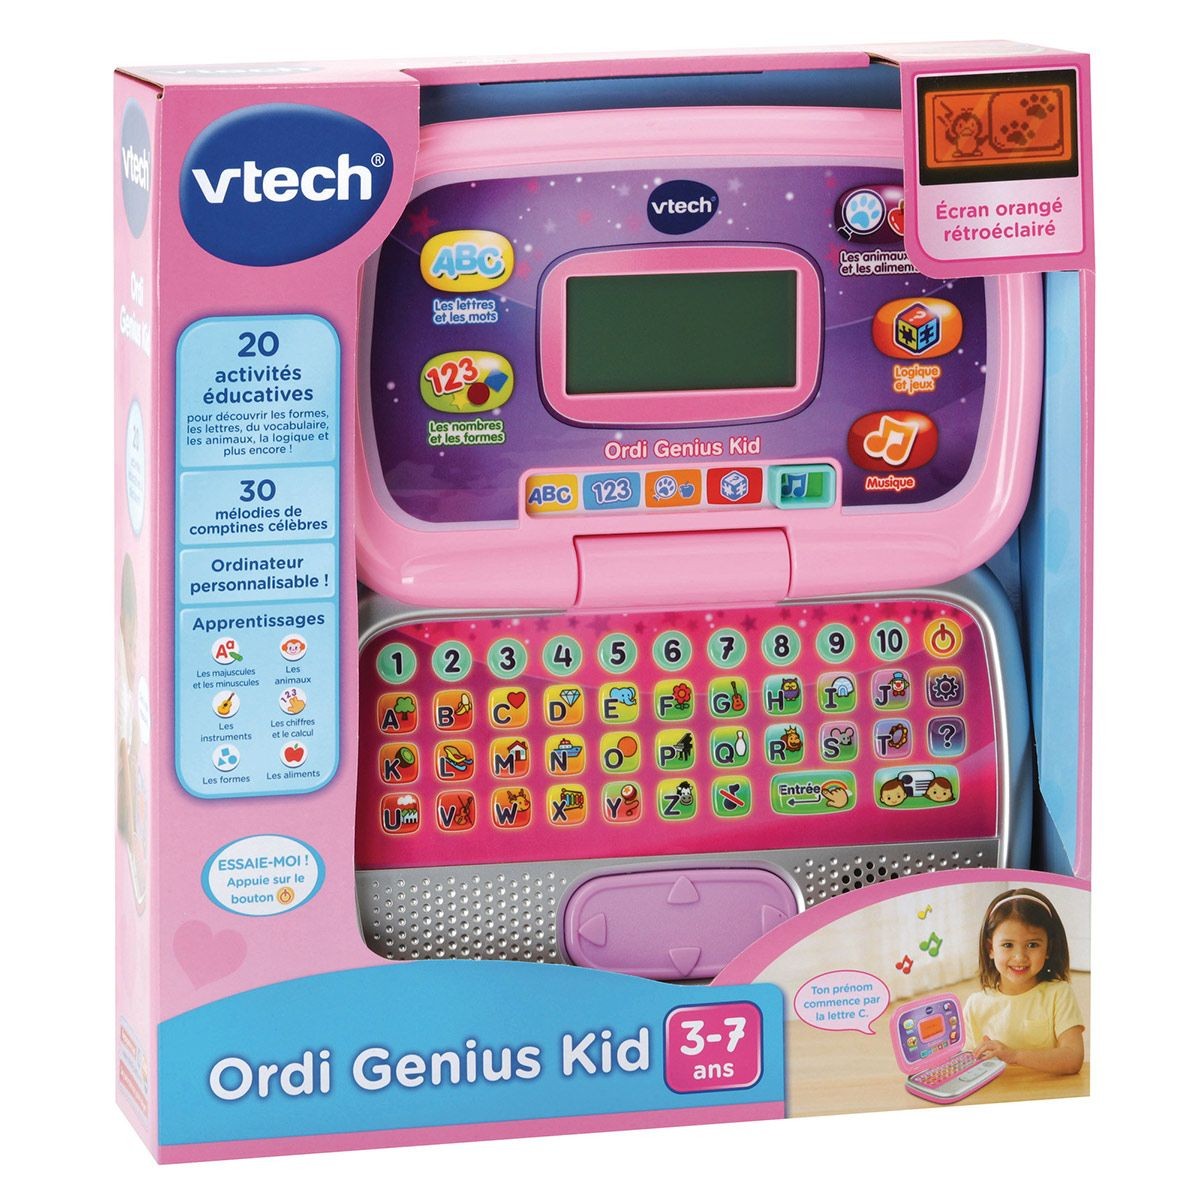 Genius xl color tablette rose, jeux educatifs